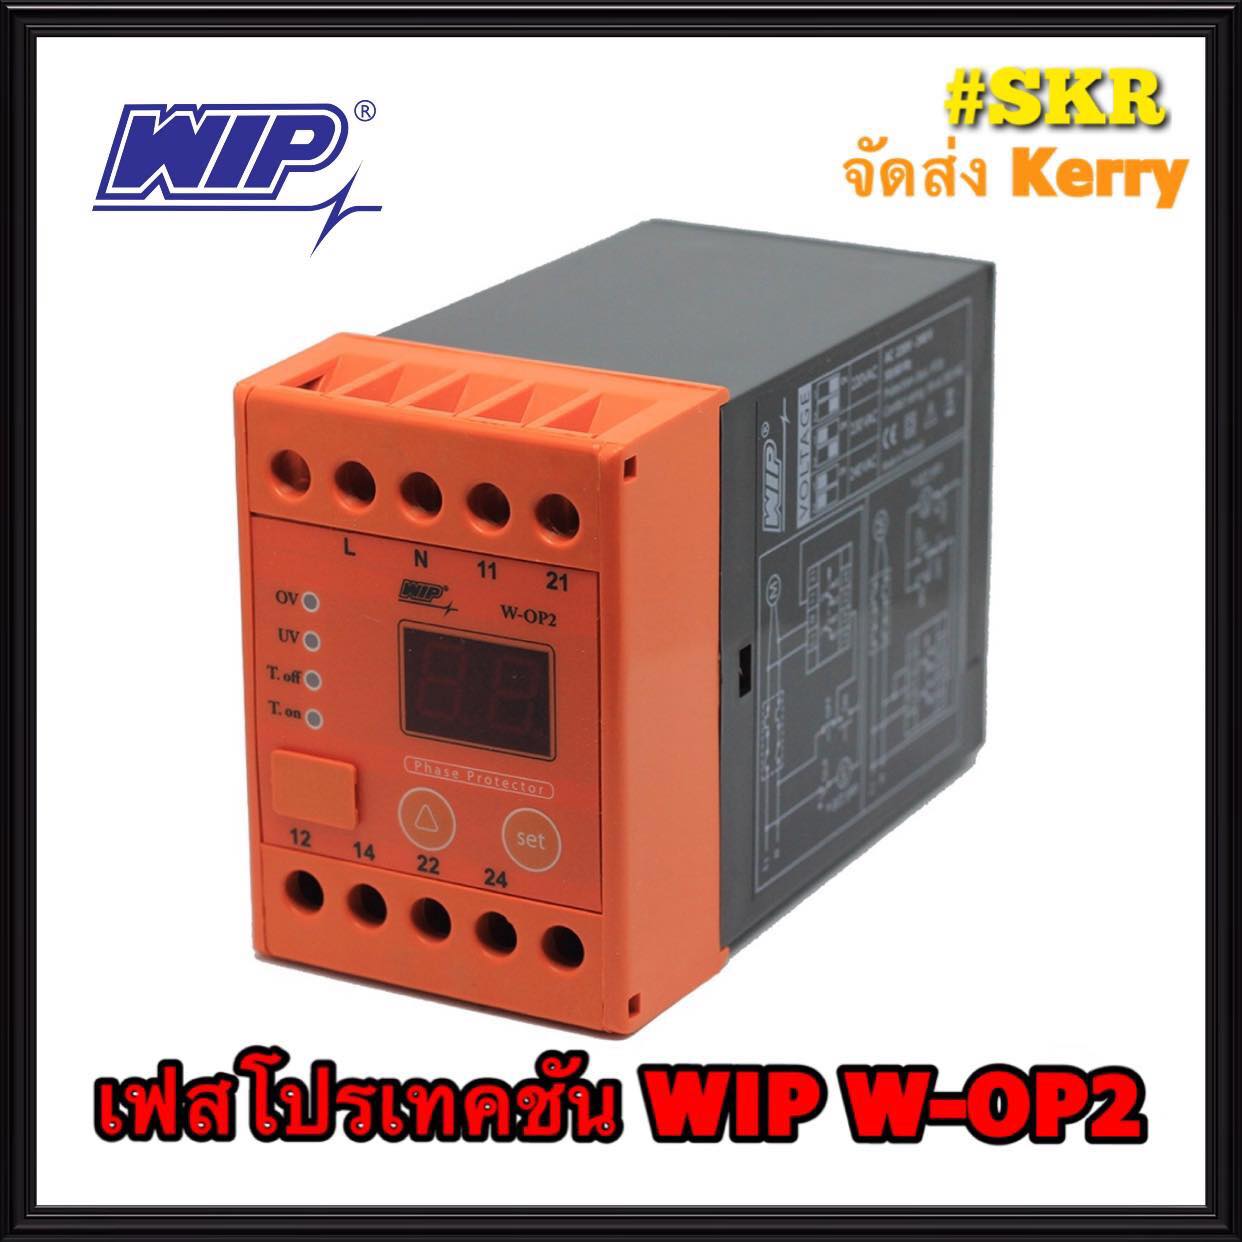 เฟสโปรเทคชั่น WIP W-OP2 อุปกรณ์ป้องกันไฟตก ไฟเกิน รุ่น W-OP2 1Phase 220Vac Phase Protection Under Voltage/Over Voltage